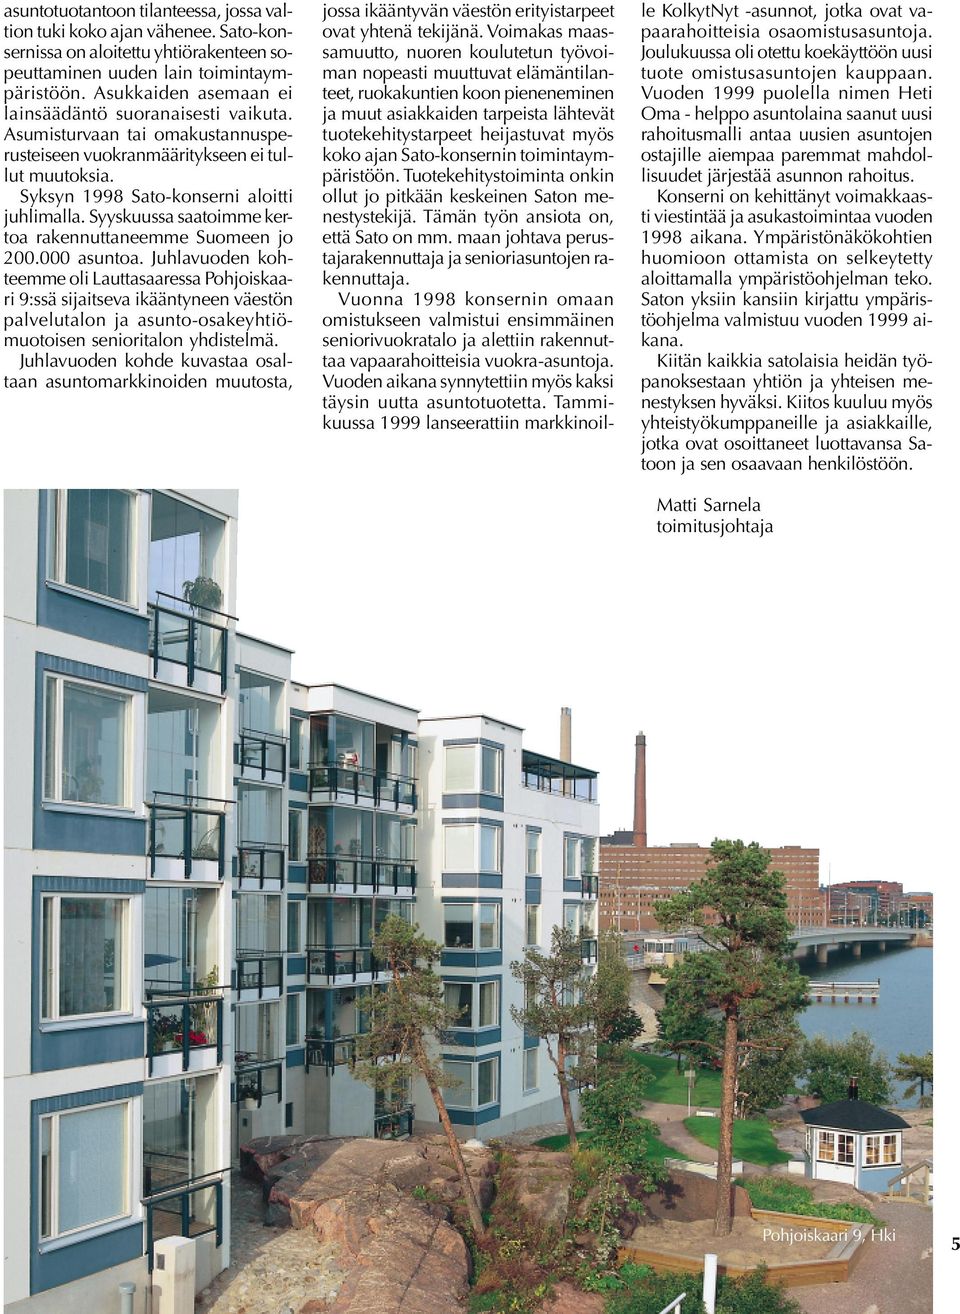 Syyskuussa saatoimme kertoa rakennuttaneemme Suomeen jo 200.000 asuntoa.